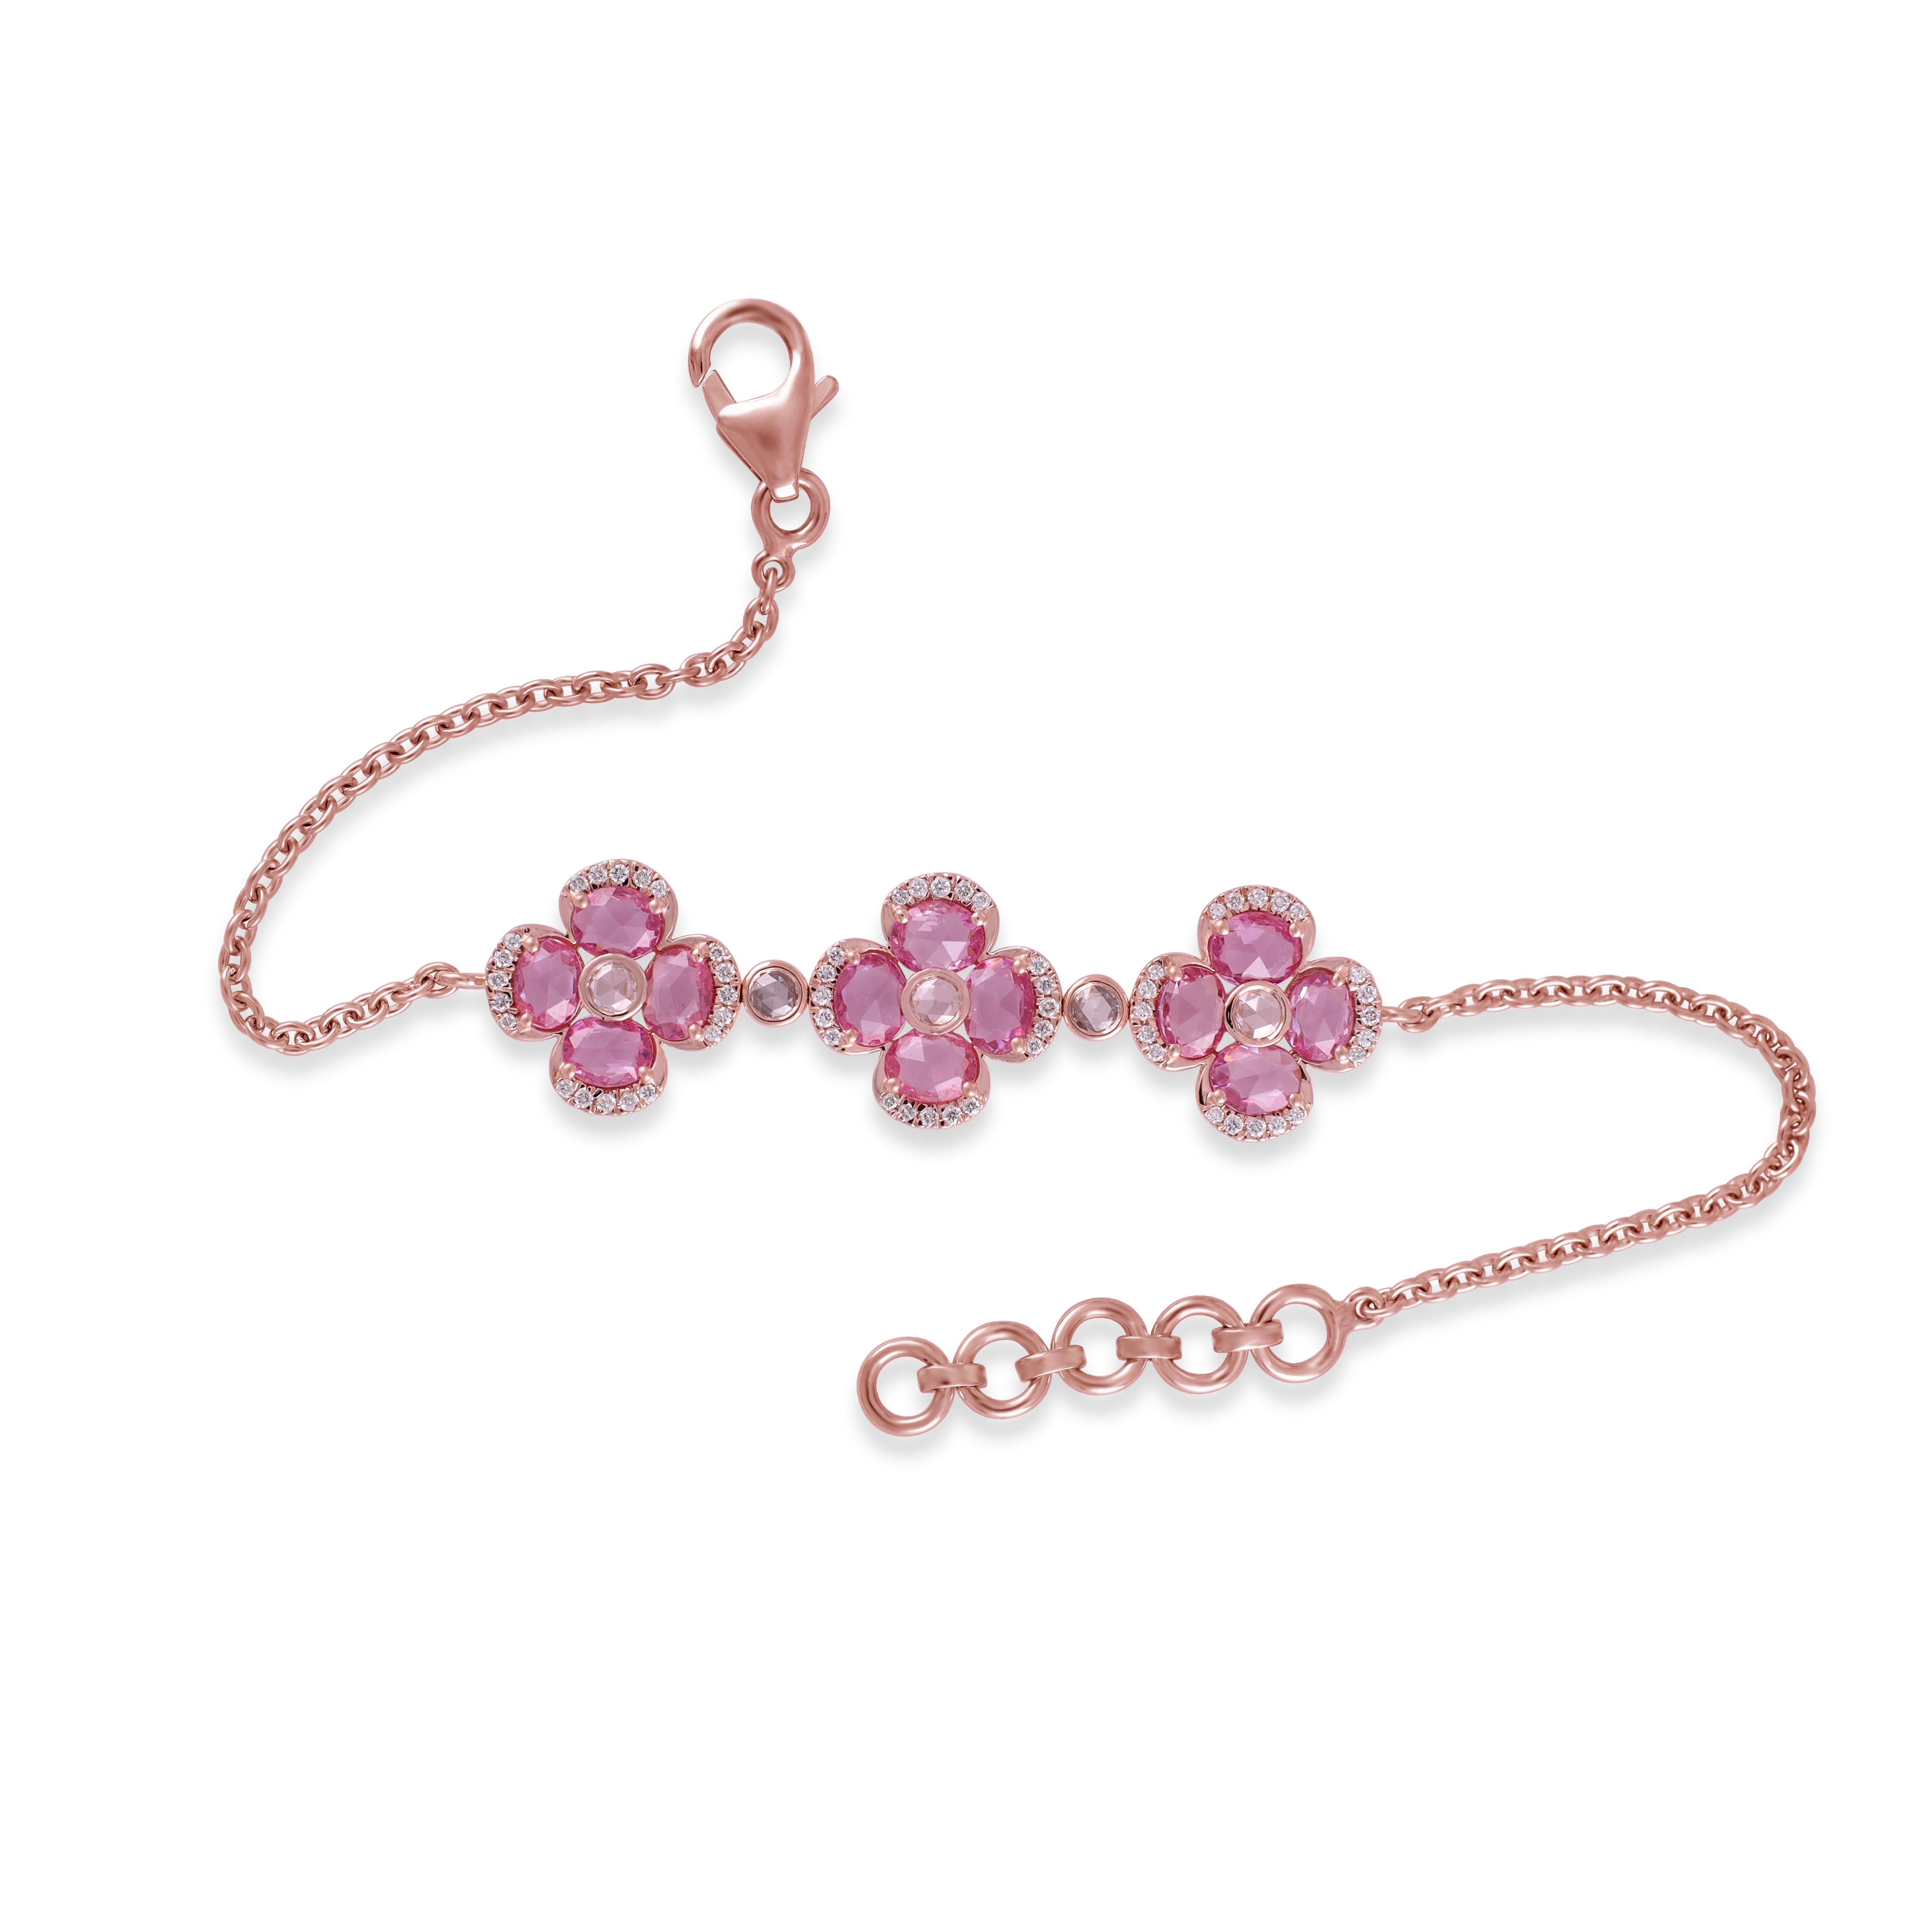 2,74 Karat Rosa Saphir
 und Diamant  Armband aus 18K Rose Gold

Dieses prächtige, ovale Pink-Saphir-Blumenarmband ist unglaublich. Die Solitär-Saphire im Ovalschliff sind wunderschön mit einzelnen Diamanten im Rosenschliff und kleinen Diamanten